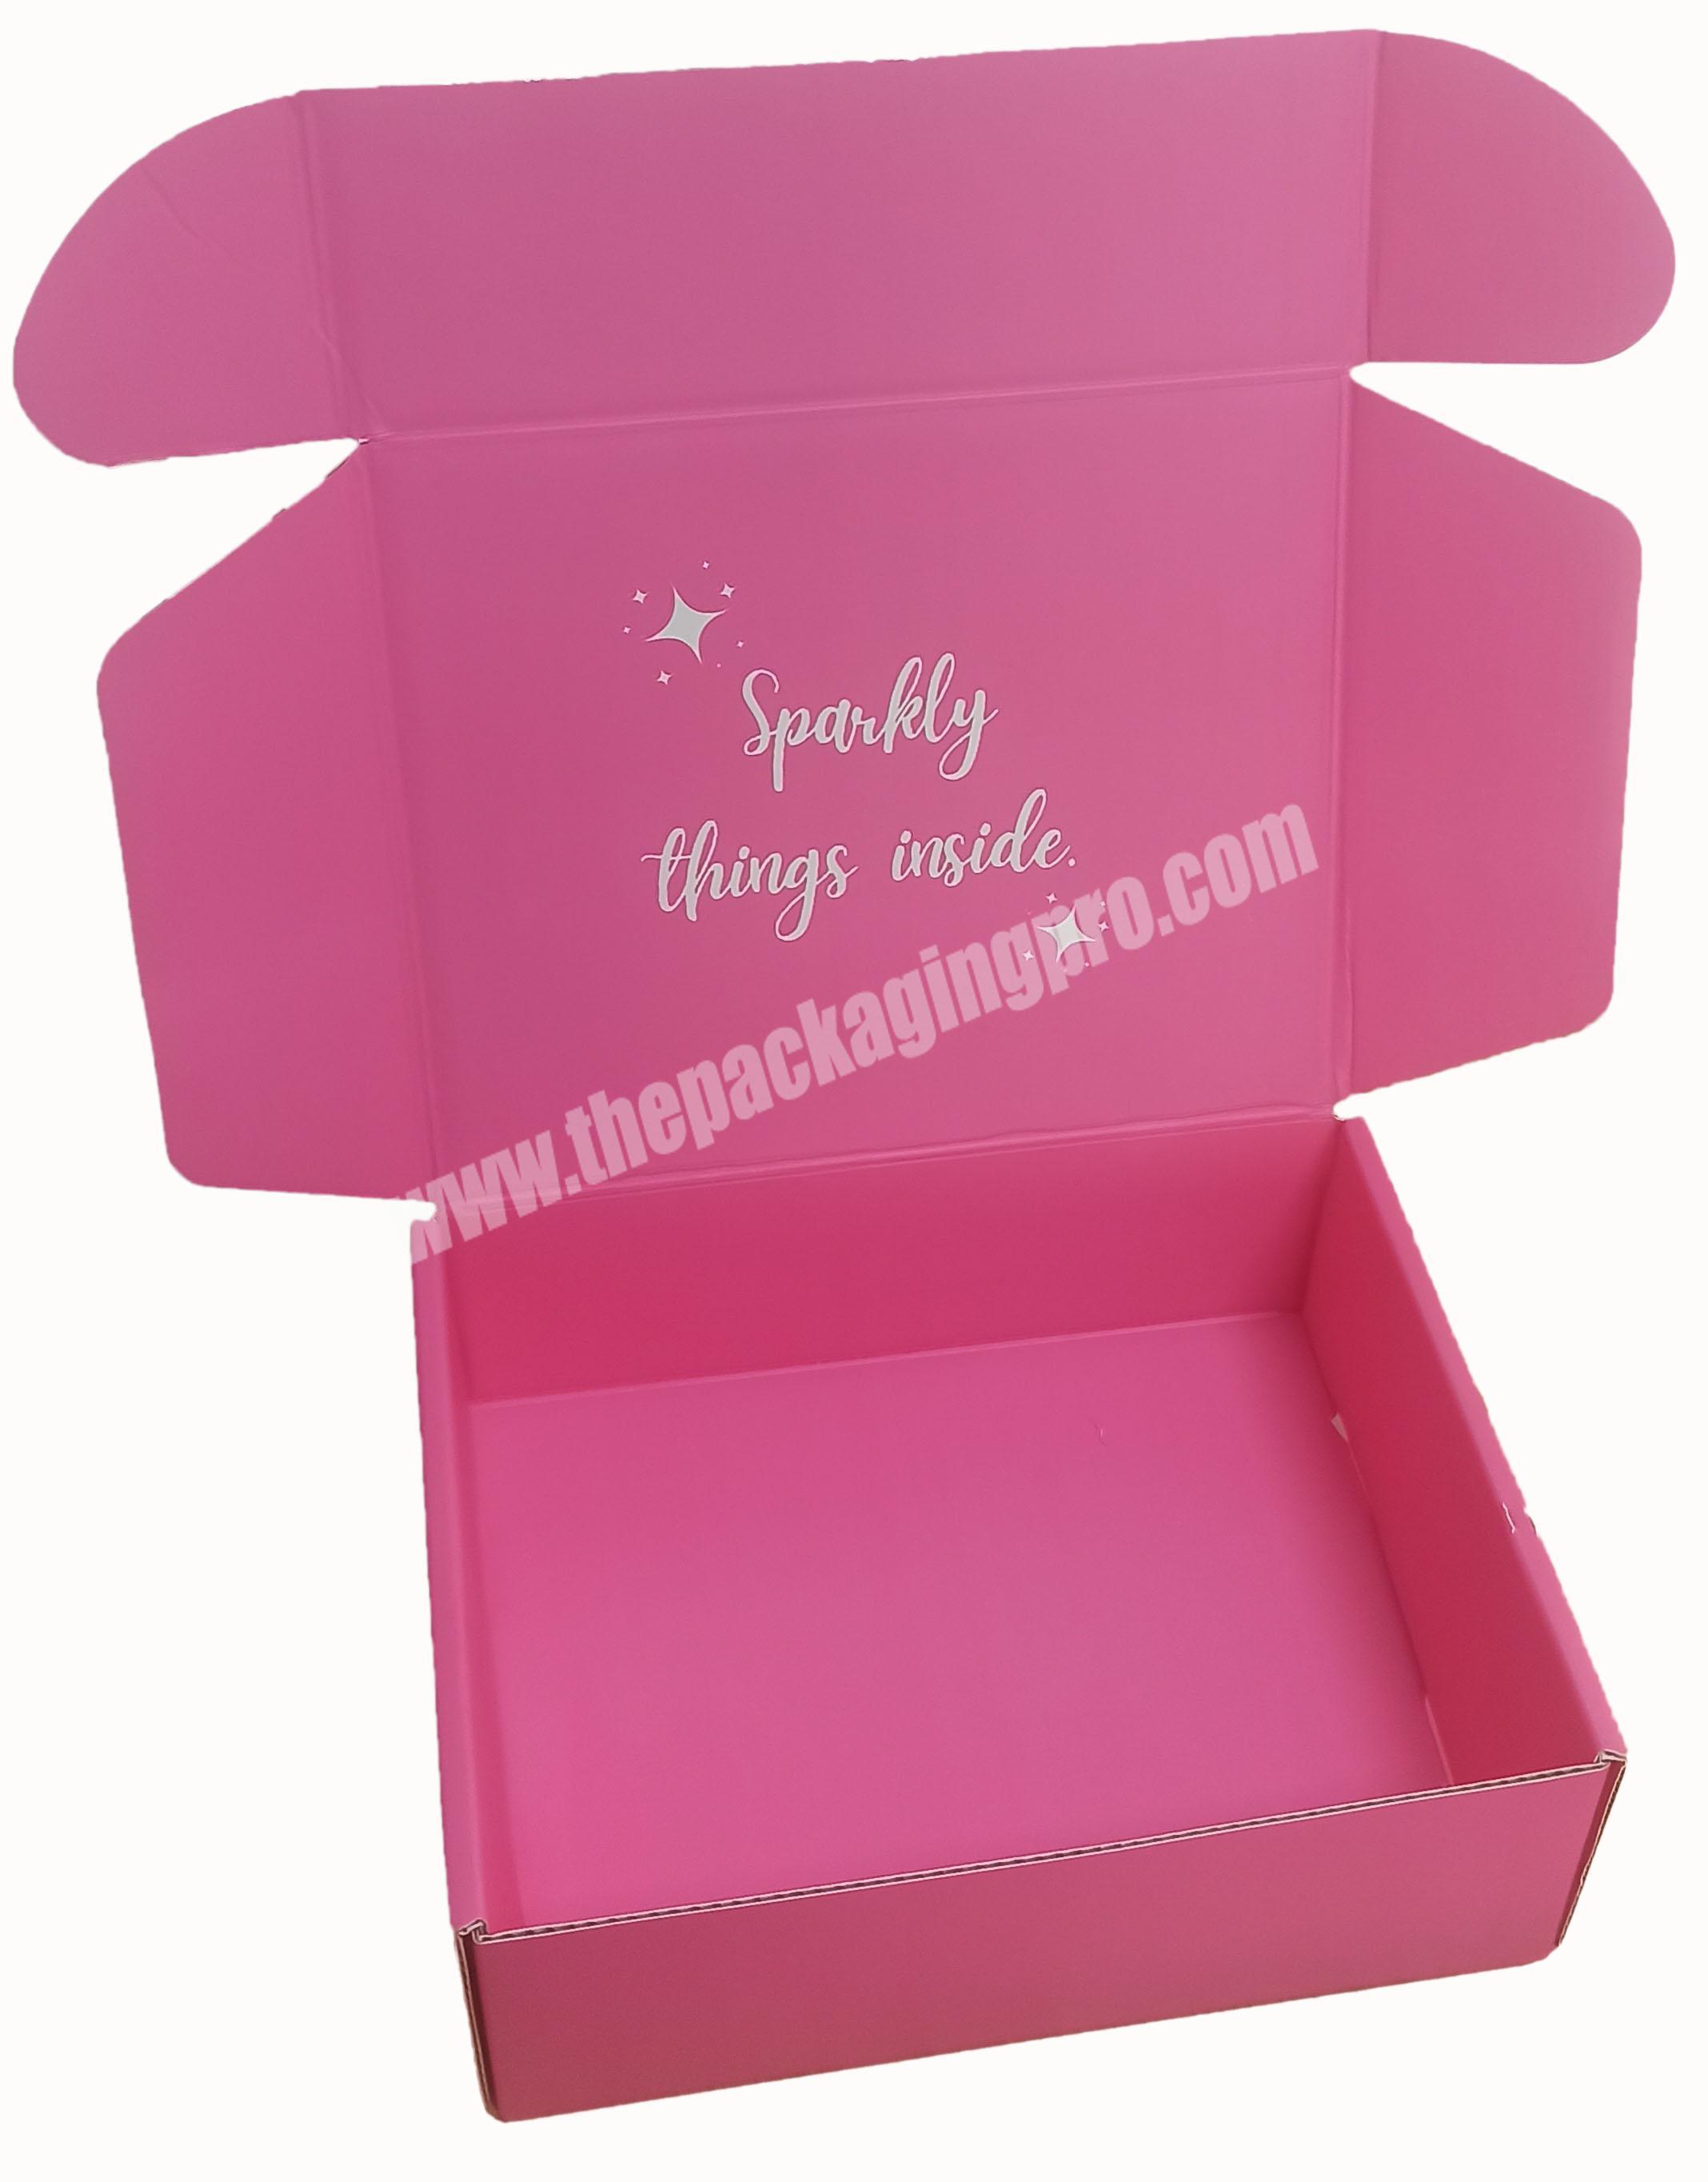 Packing mailer boxes custom logo custom packaging box for clothes shipping boxes custom logo